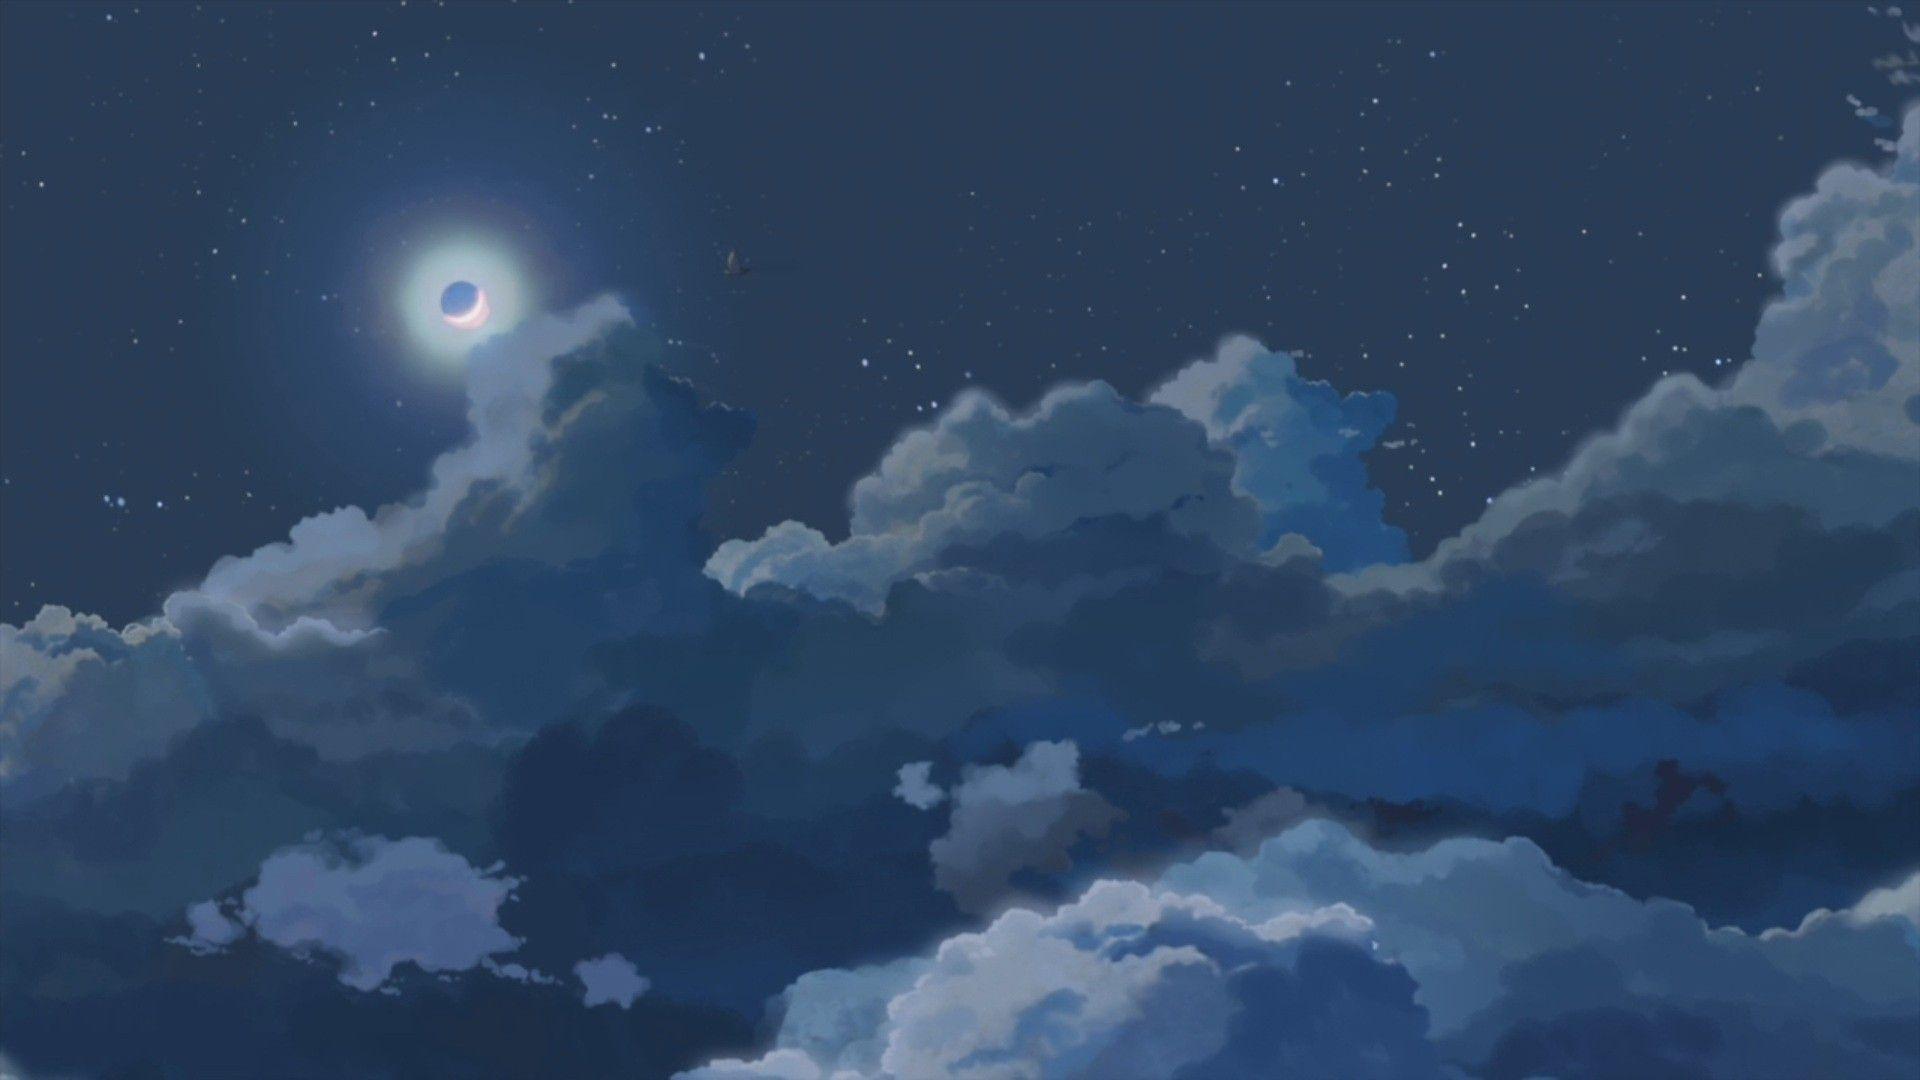 Anime #Wallpaper #Background. Anime scenery wallpaper